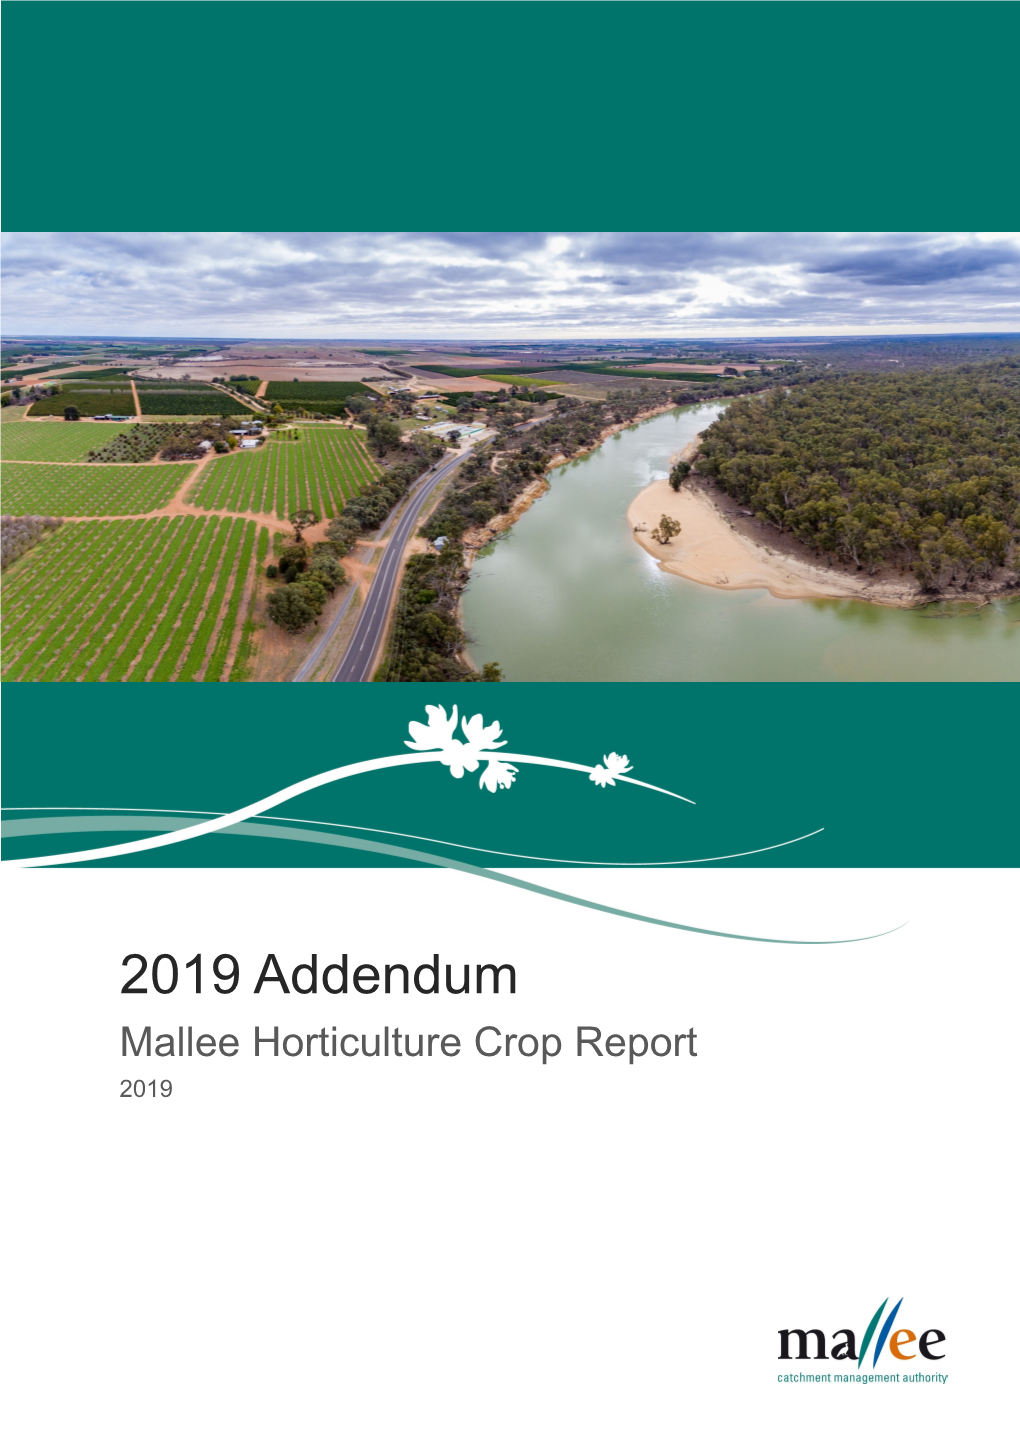 Mallee Crop Report 2019 (Addendum)